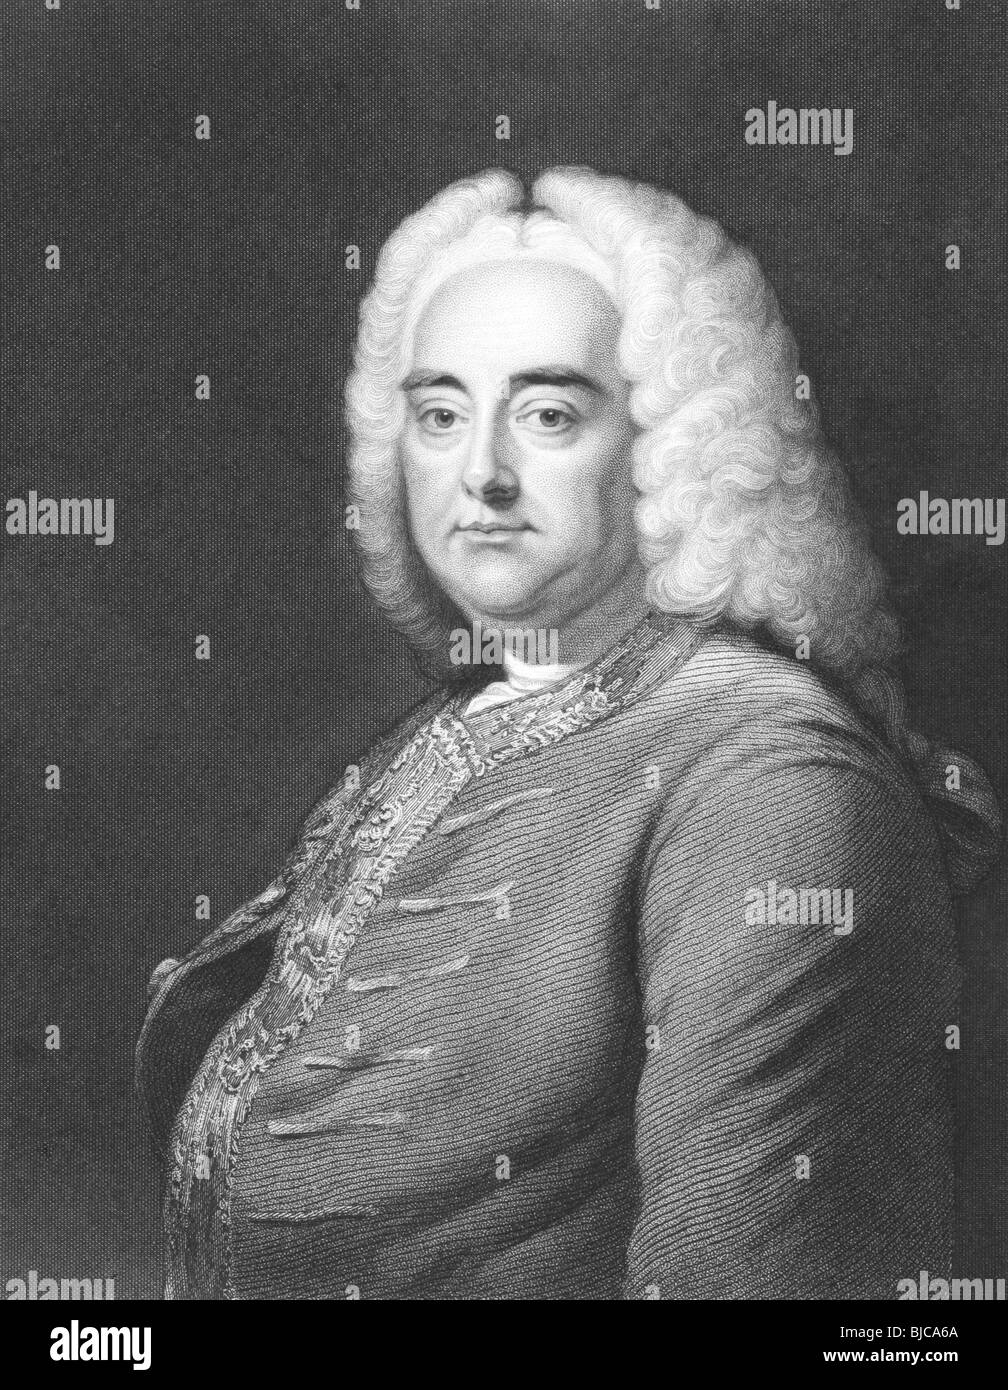 George Frideric Handel (1685-1759) su incisione dal 1800s. Tedesco compositore barocco. Foto Stock